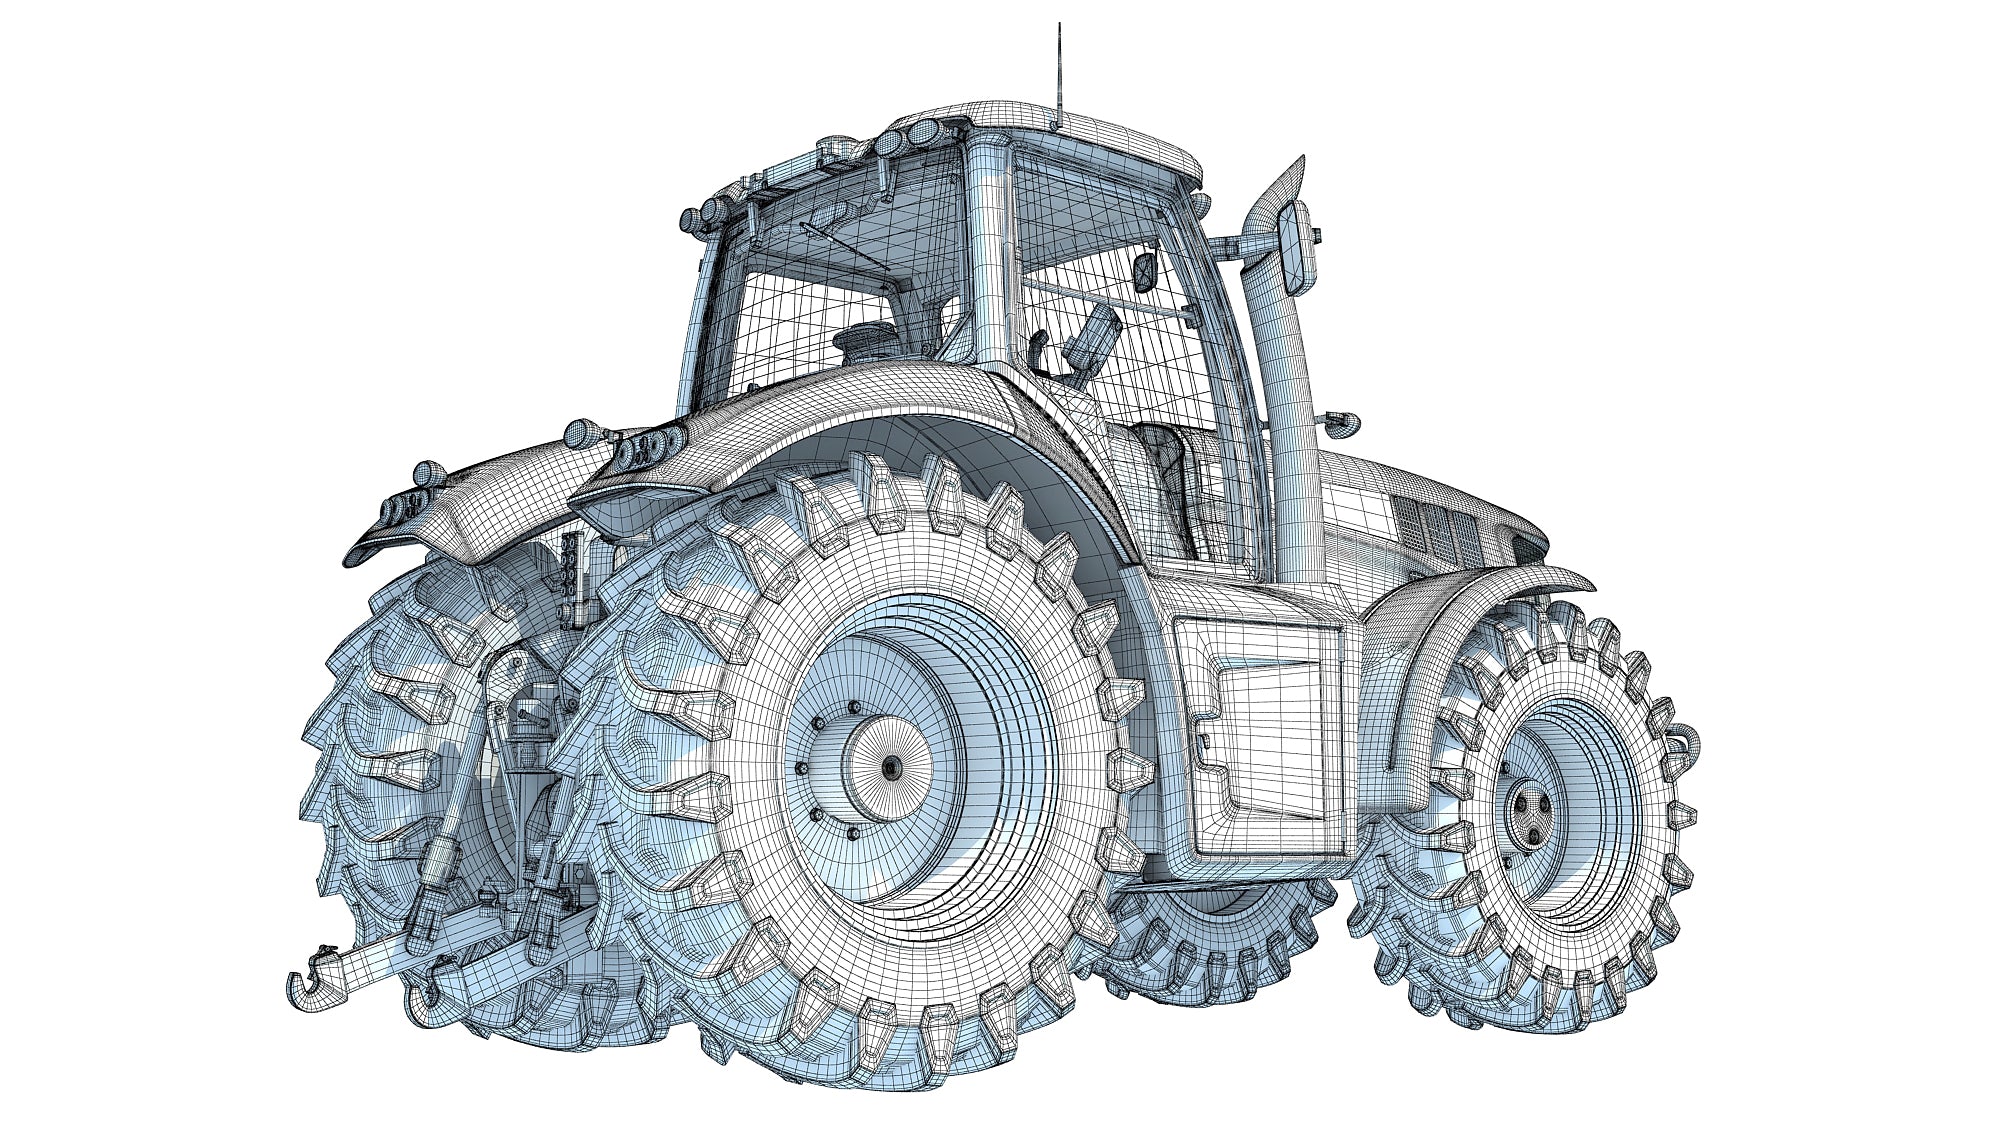 Farm Tractor 3D Model